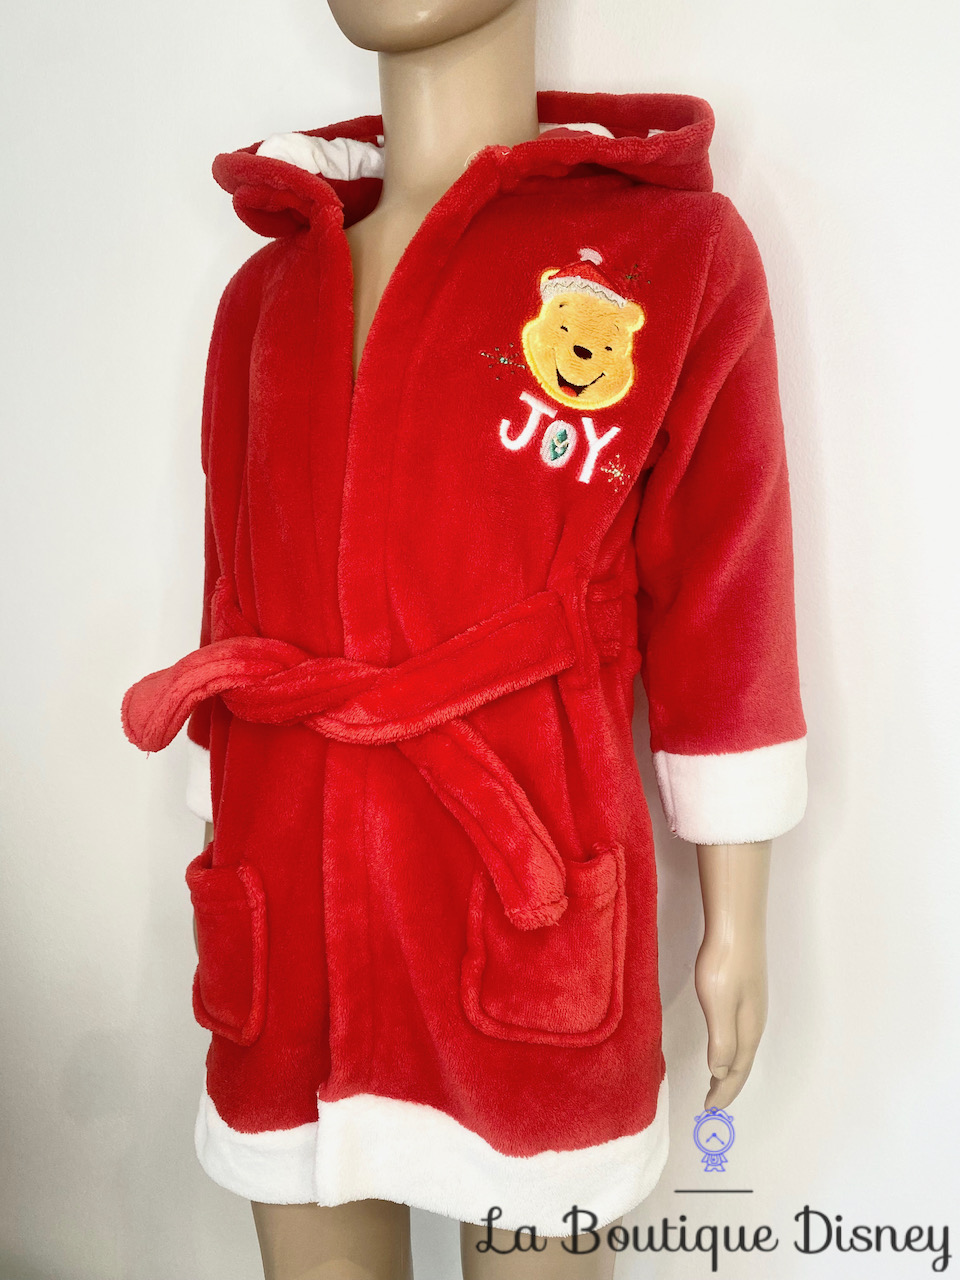 Robe de chambre Winnie l\'ourson Noël JOY Disney Store taille 18-24 mois peignoir rouge